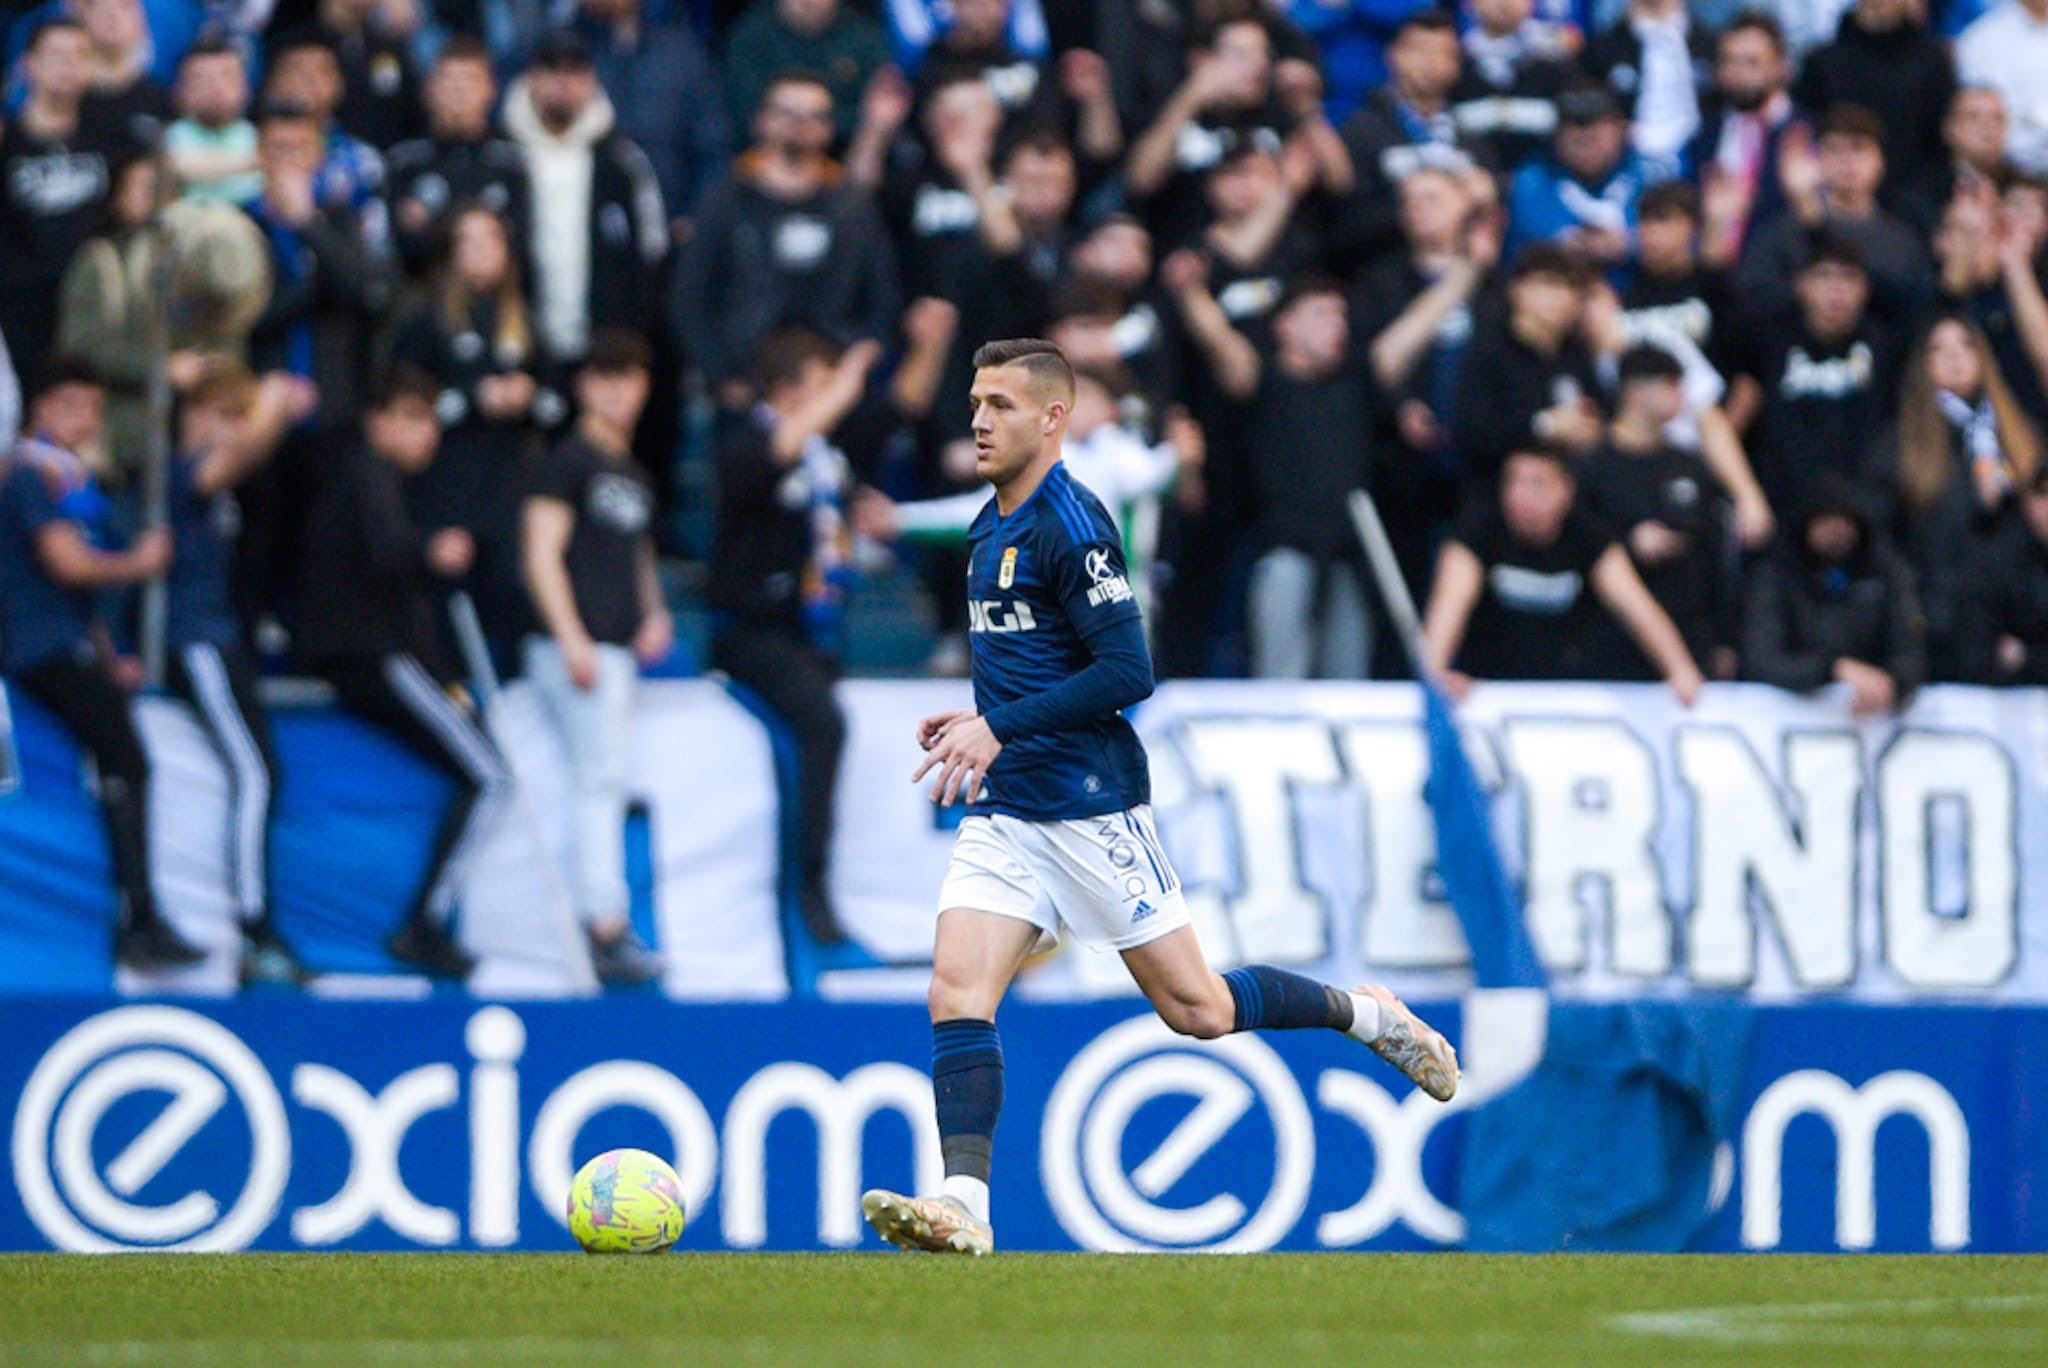 El Real Oviedo se mantiene en el 'play-off' de plantillas con más valor